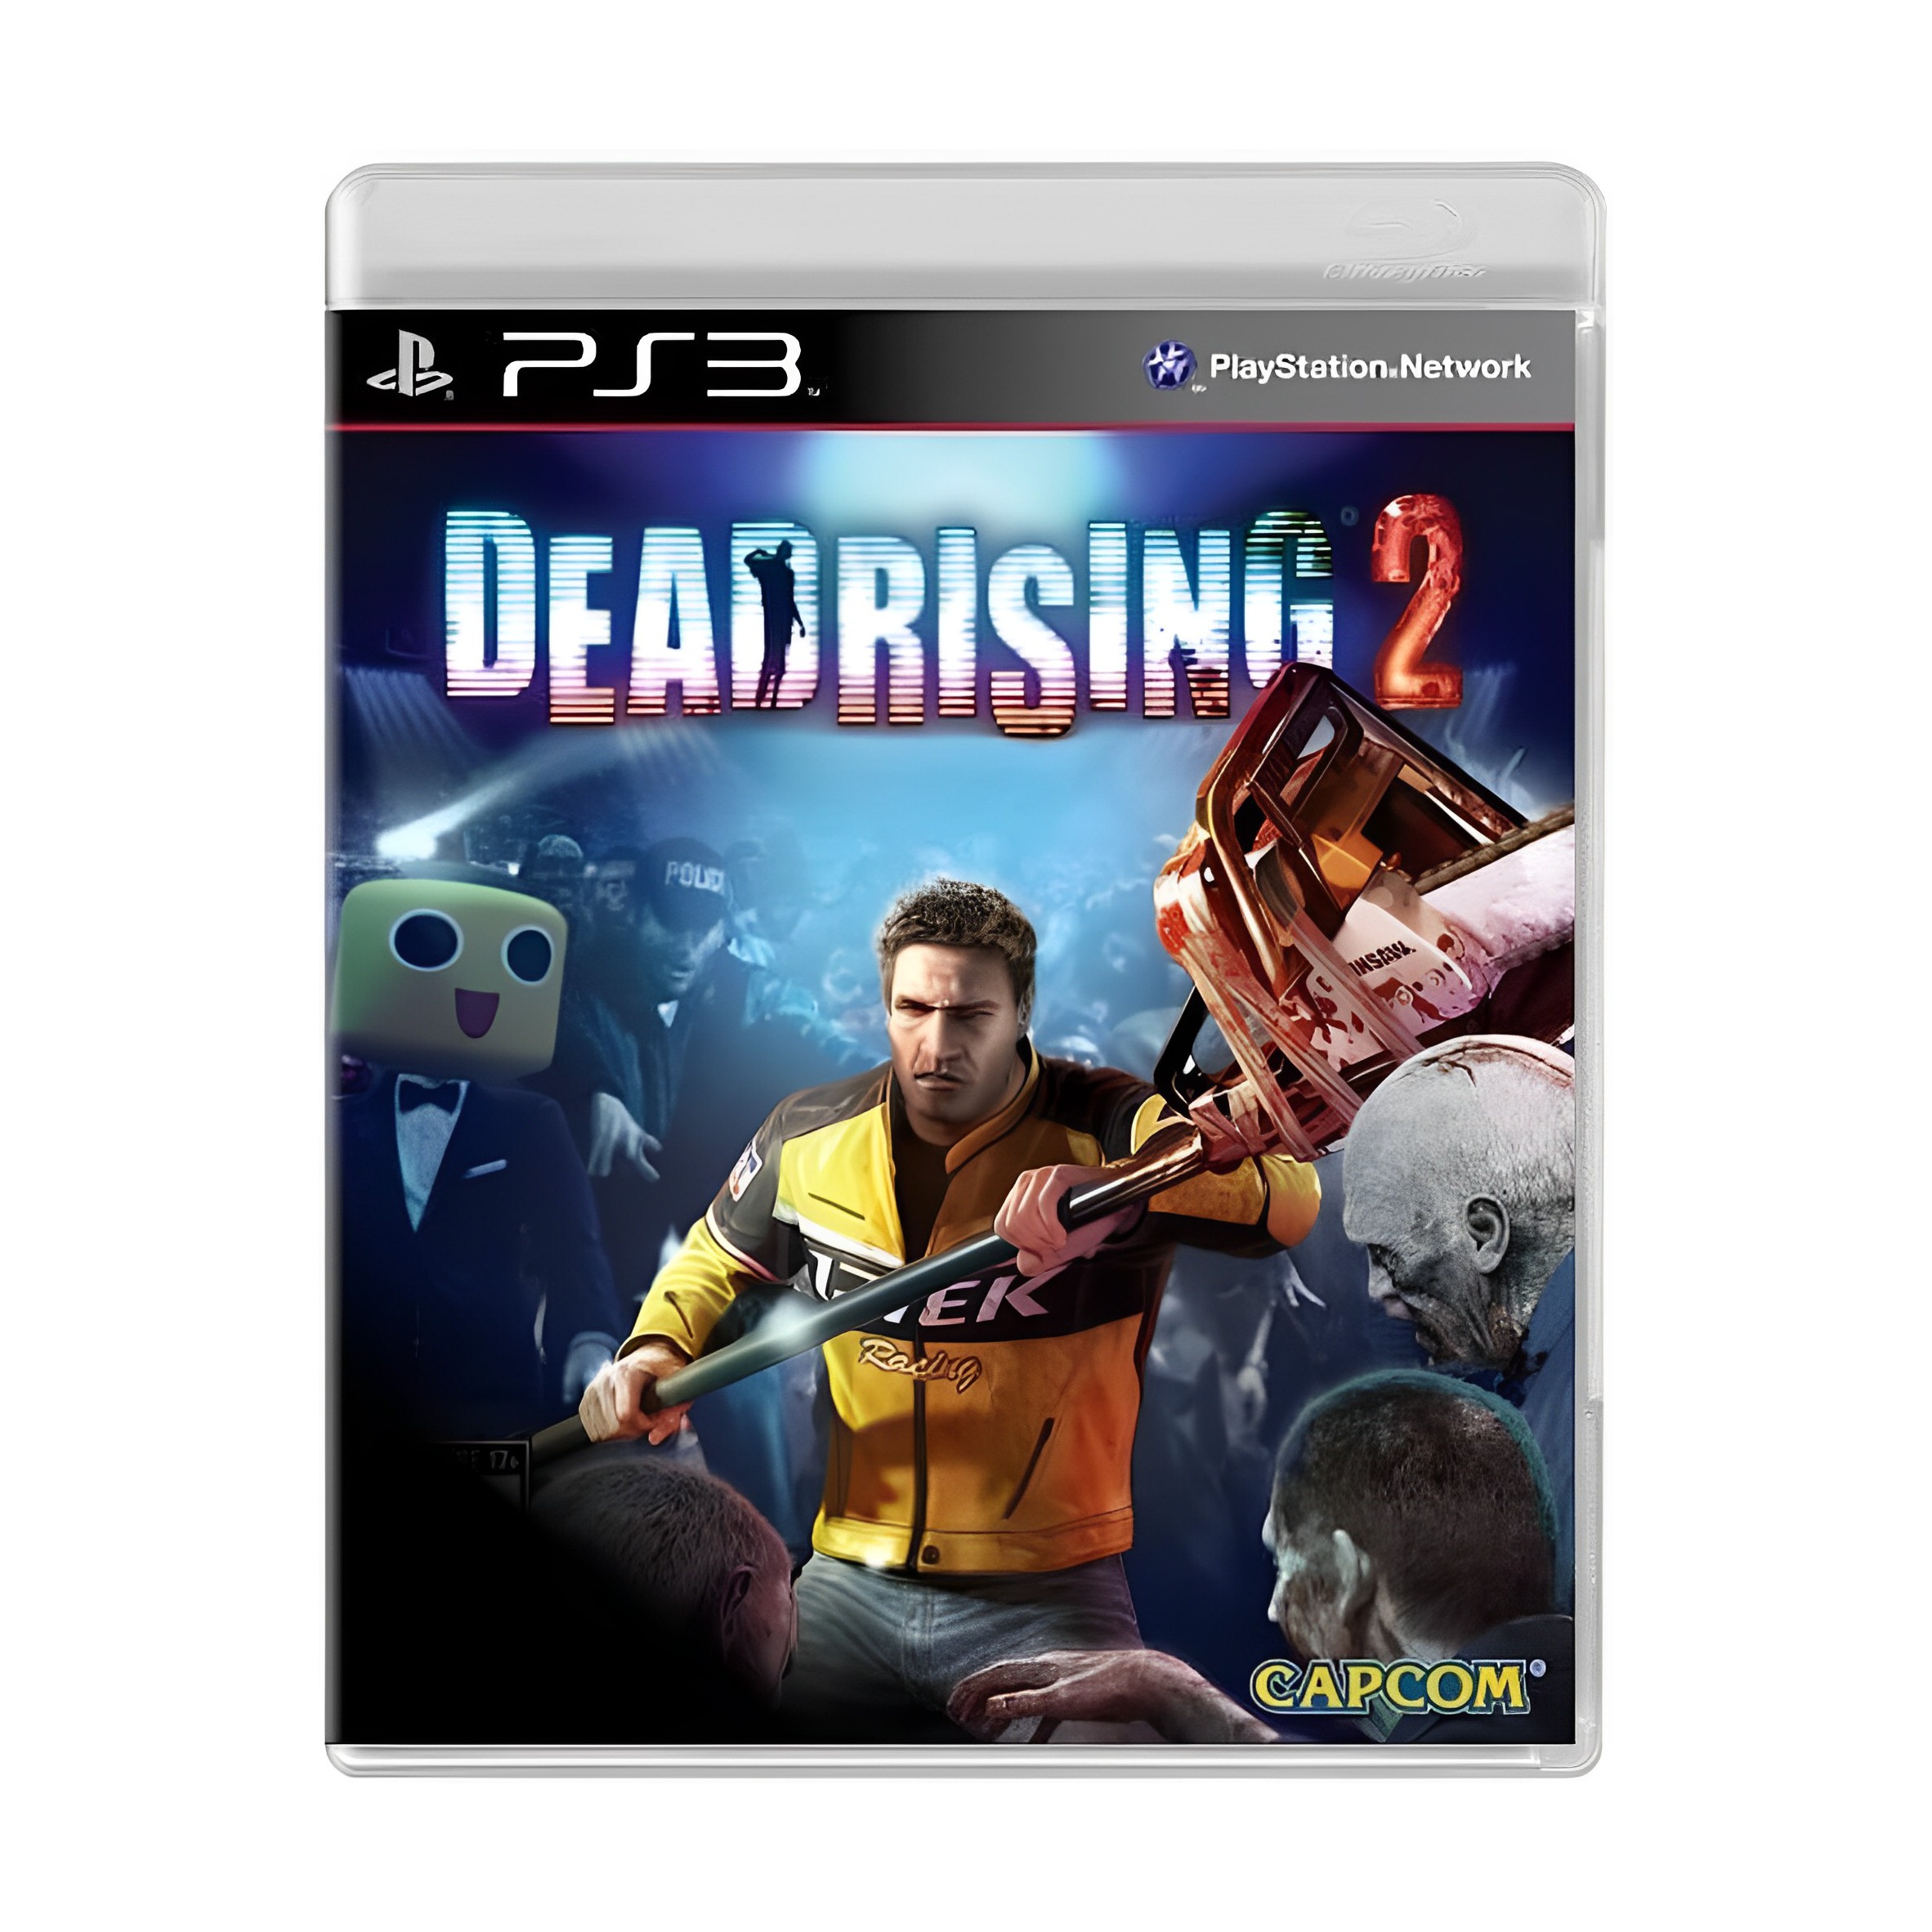 Red Dead ( Redemption Normal e modo Zumbi ) - Jogo para Xbox 360 Original -  Mídia Física